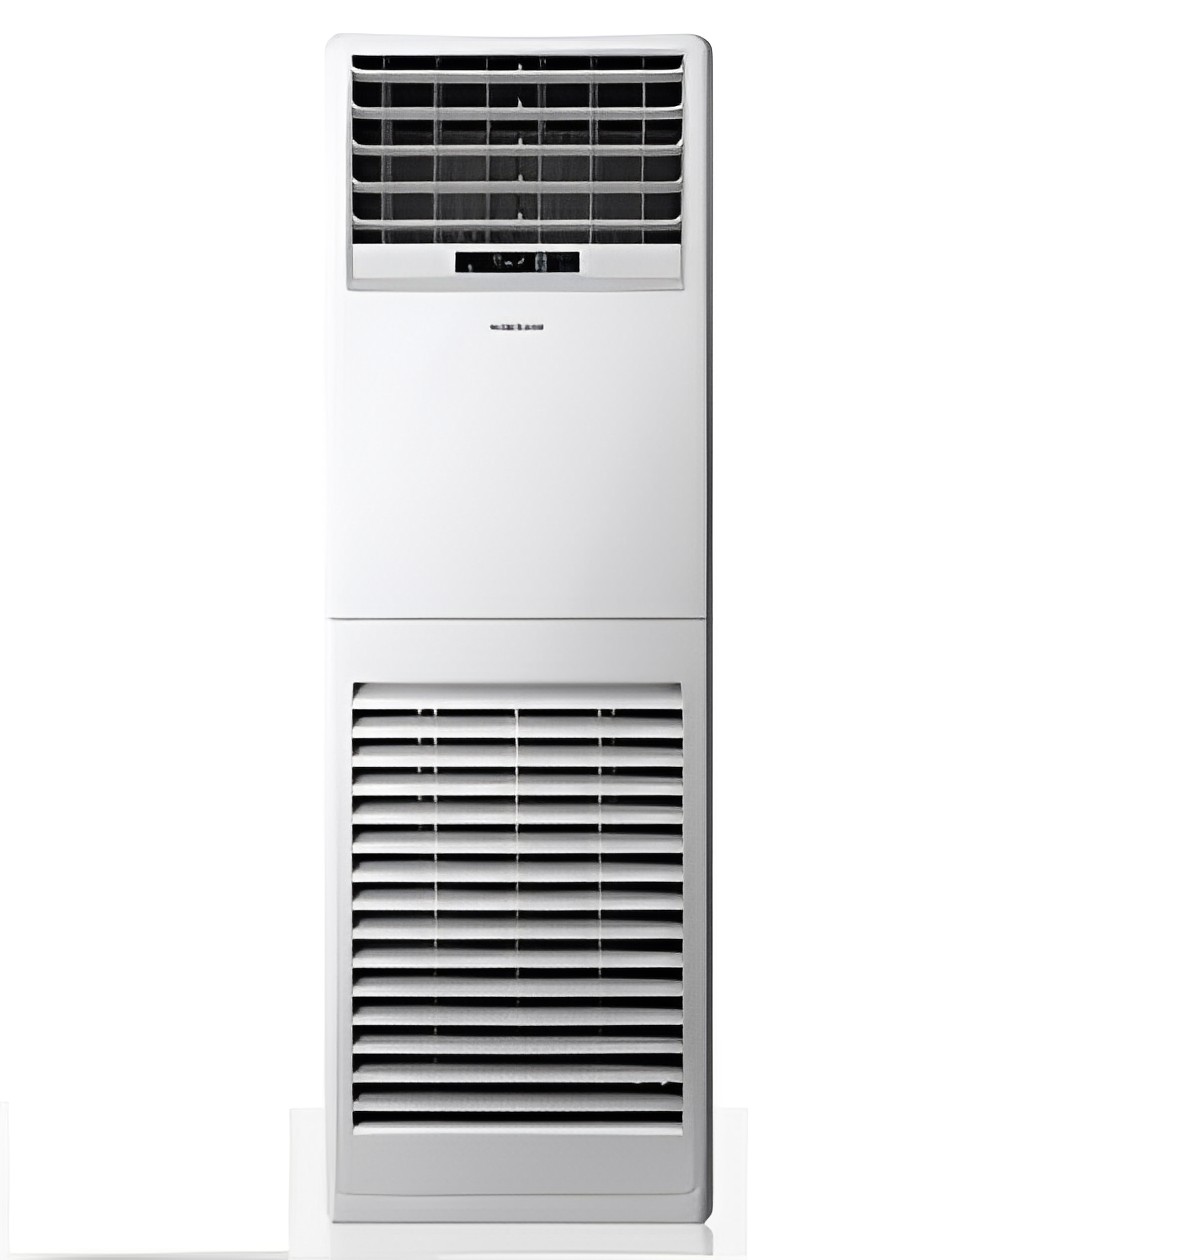 Máy Lạnh Tủ Đứng Samsung Inverter 4 HP AC036KNPDEC/SV